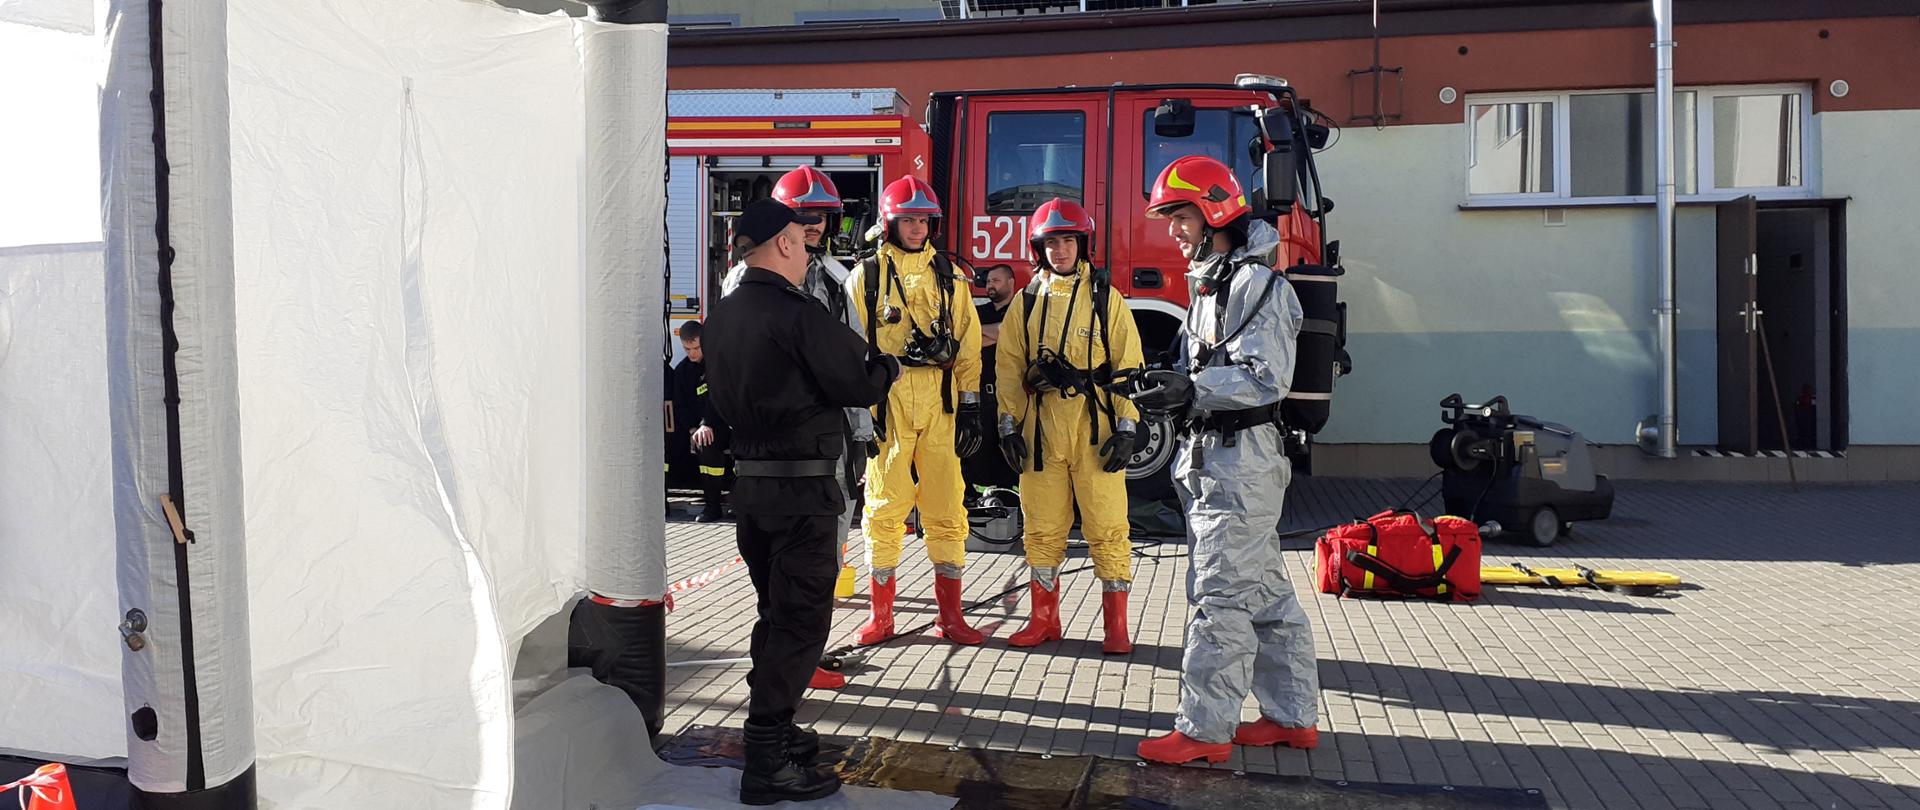 Strażak ubrany w czarny mundur przekazującego założenia do realizacji zadań z zakresu dekontaminacji dla czterech strażaków stojących przed nim obok jest rozłożony sprzęt.